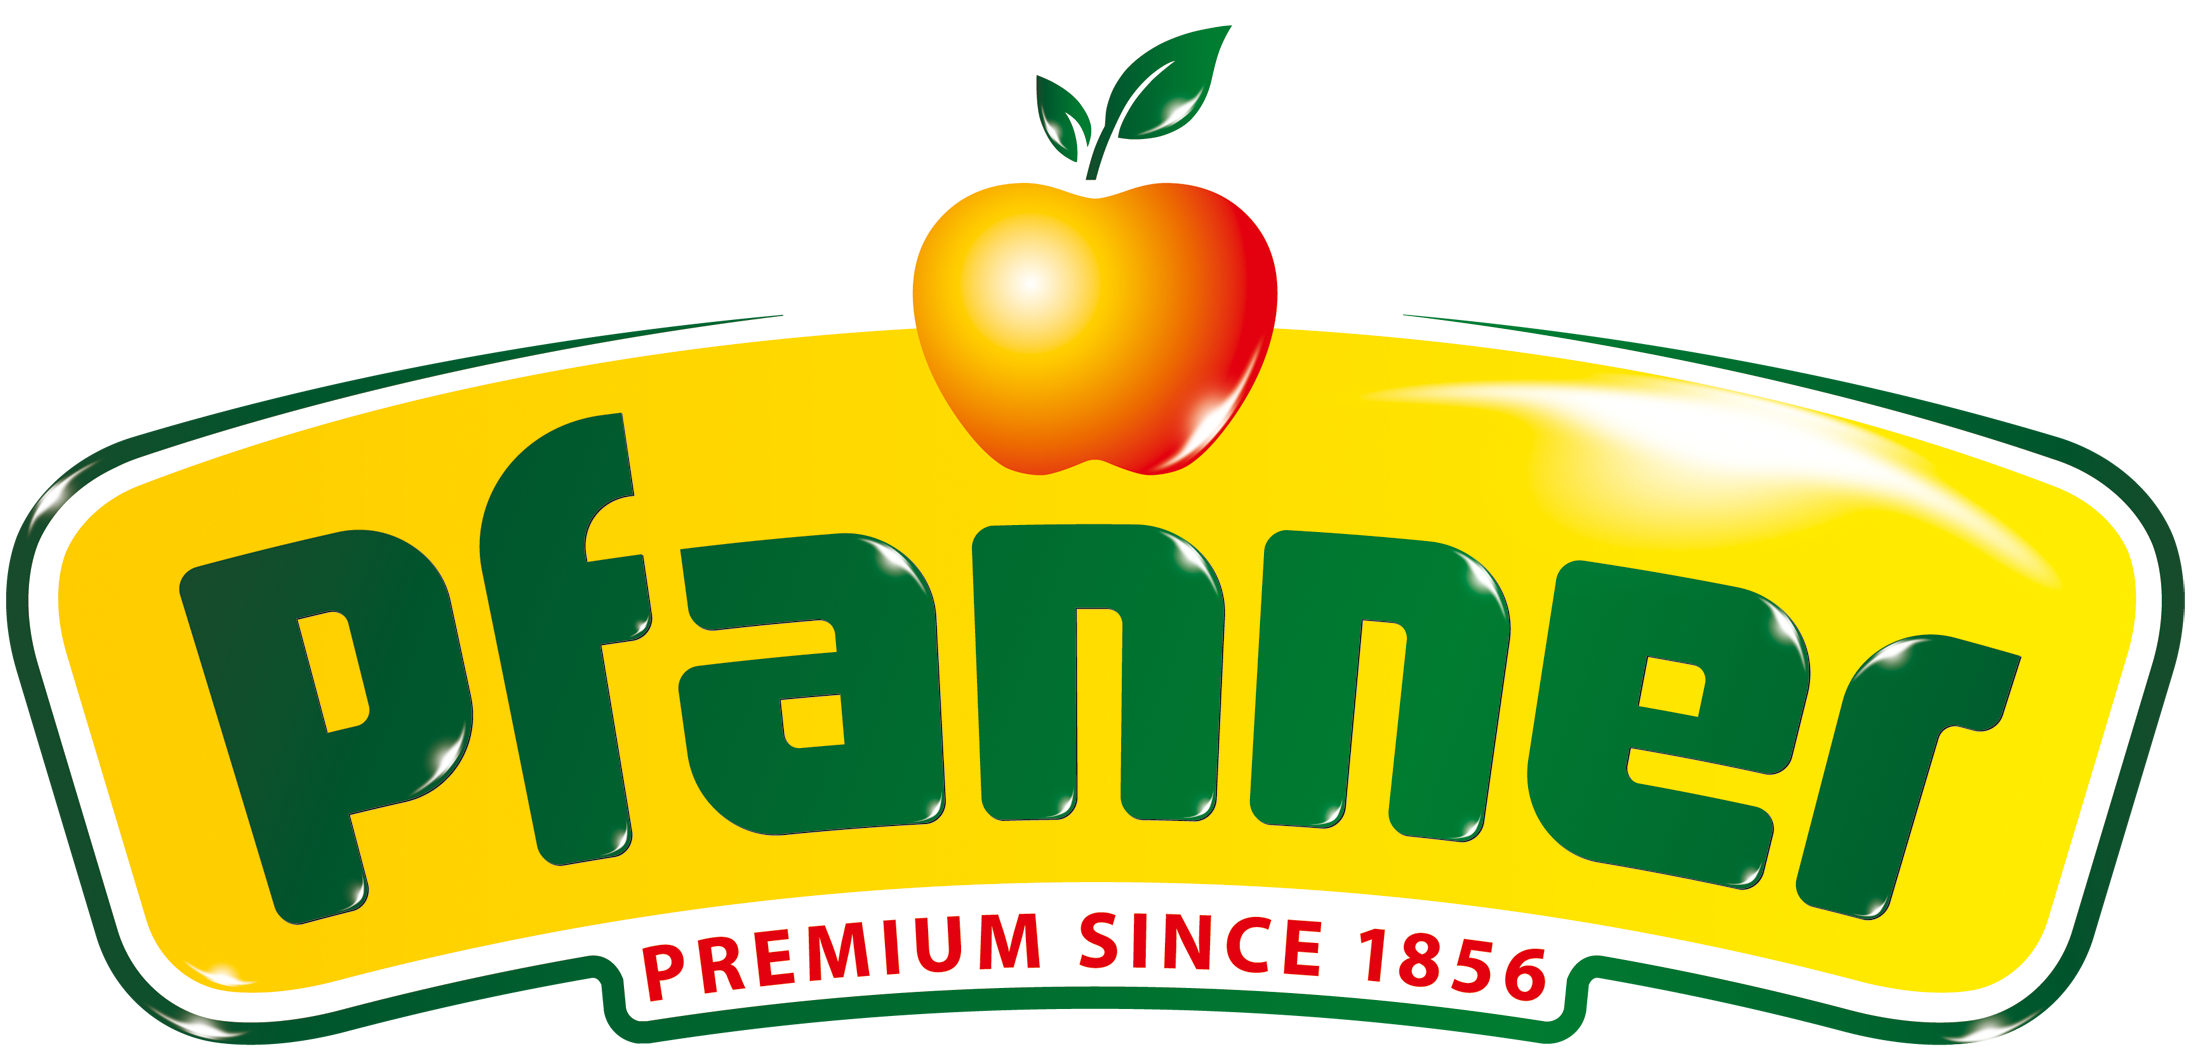 Logo der Marke Pfanner